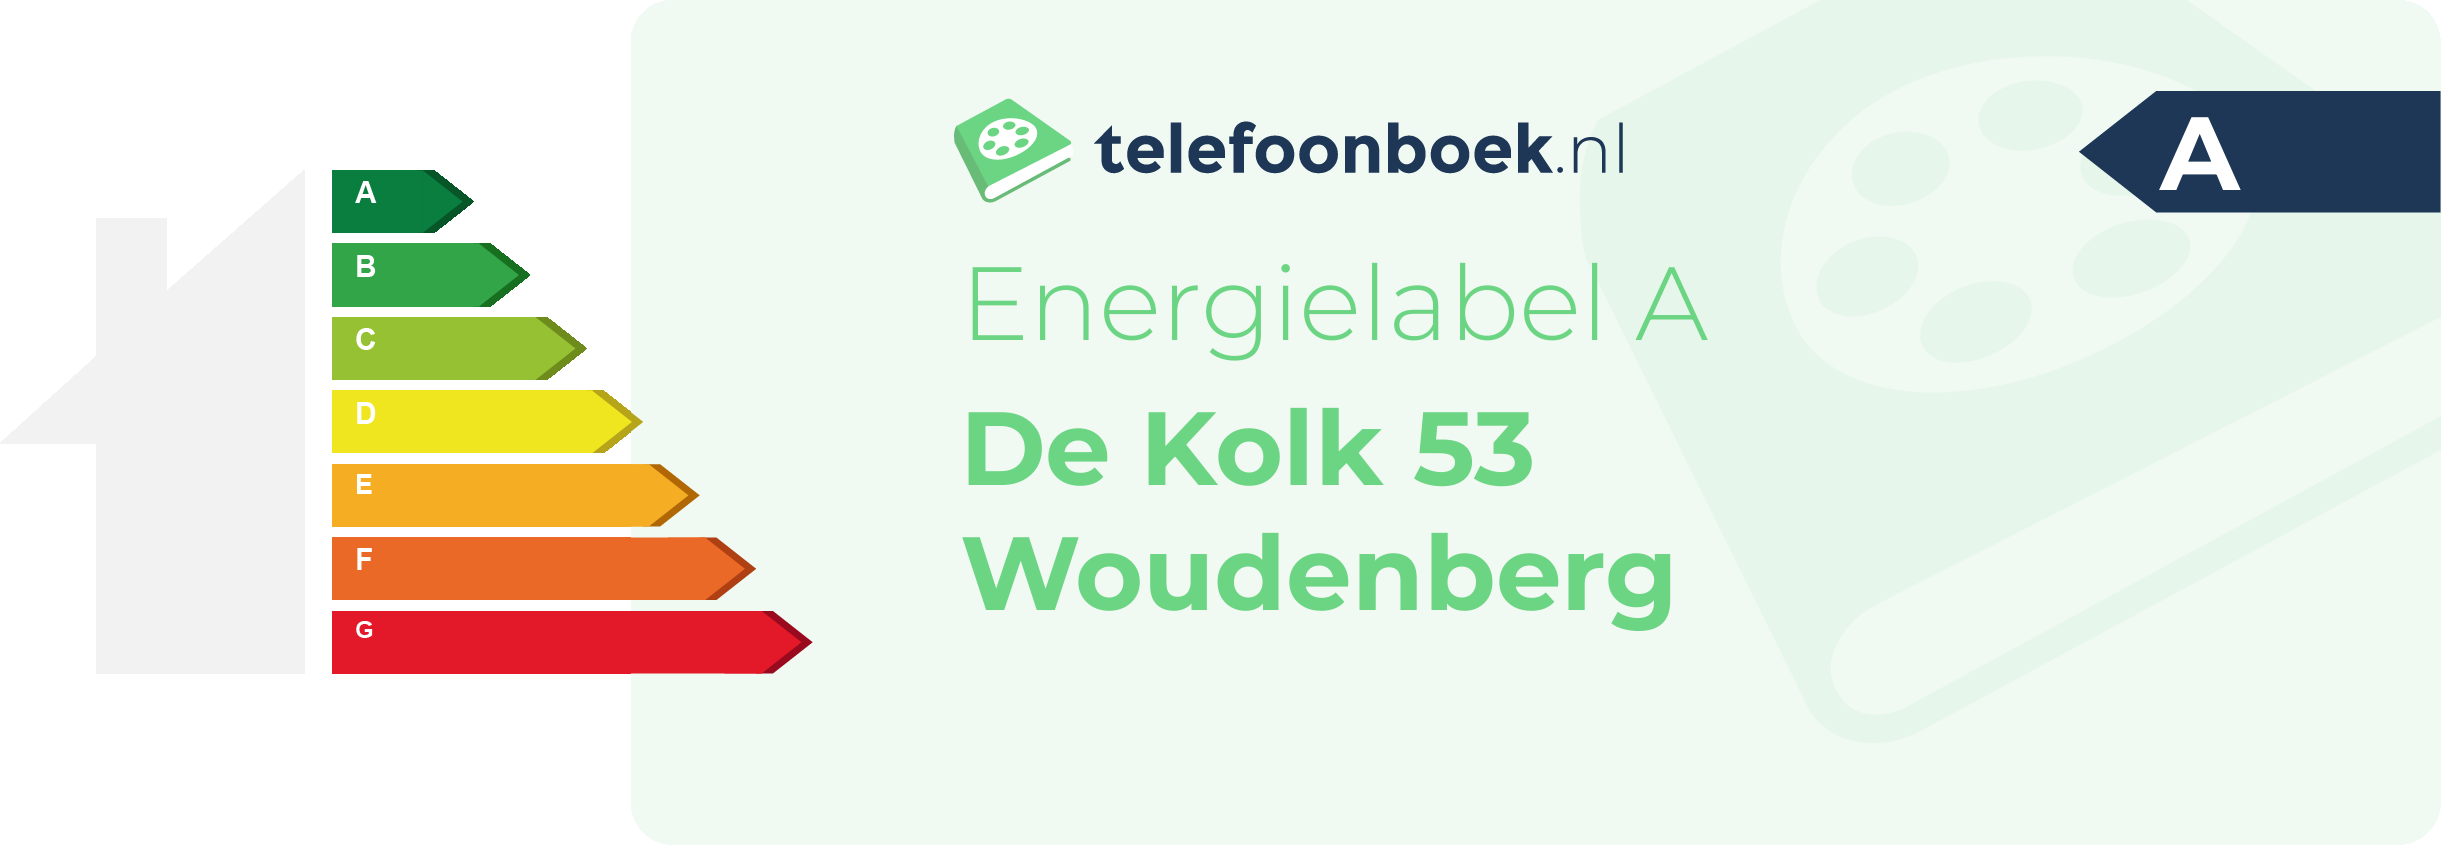 Energielabel De Kolk 53 Woudenberg